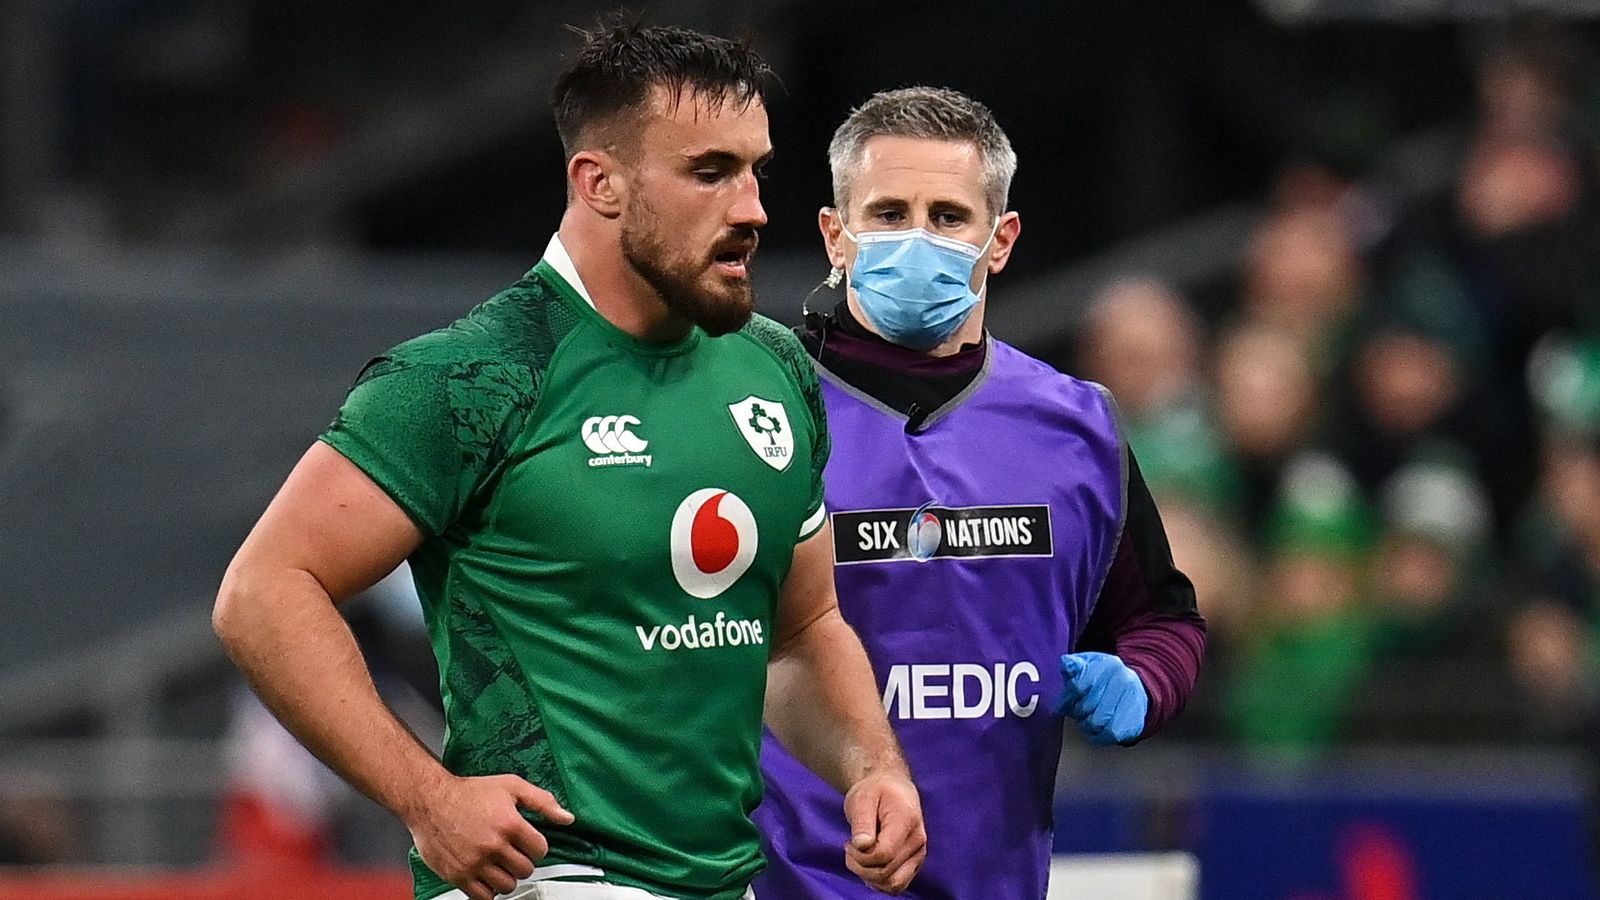 Le talonneur irlandais Ronan Kelleher exclu pour le reste des Six Nations en raison d’une blessure à l’épaule |  Actualités du rugby à XV